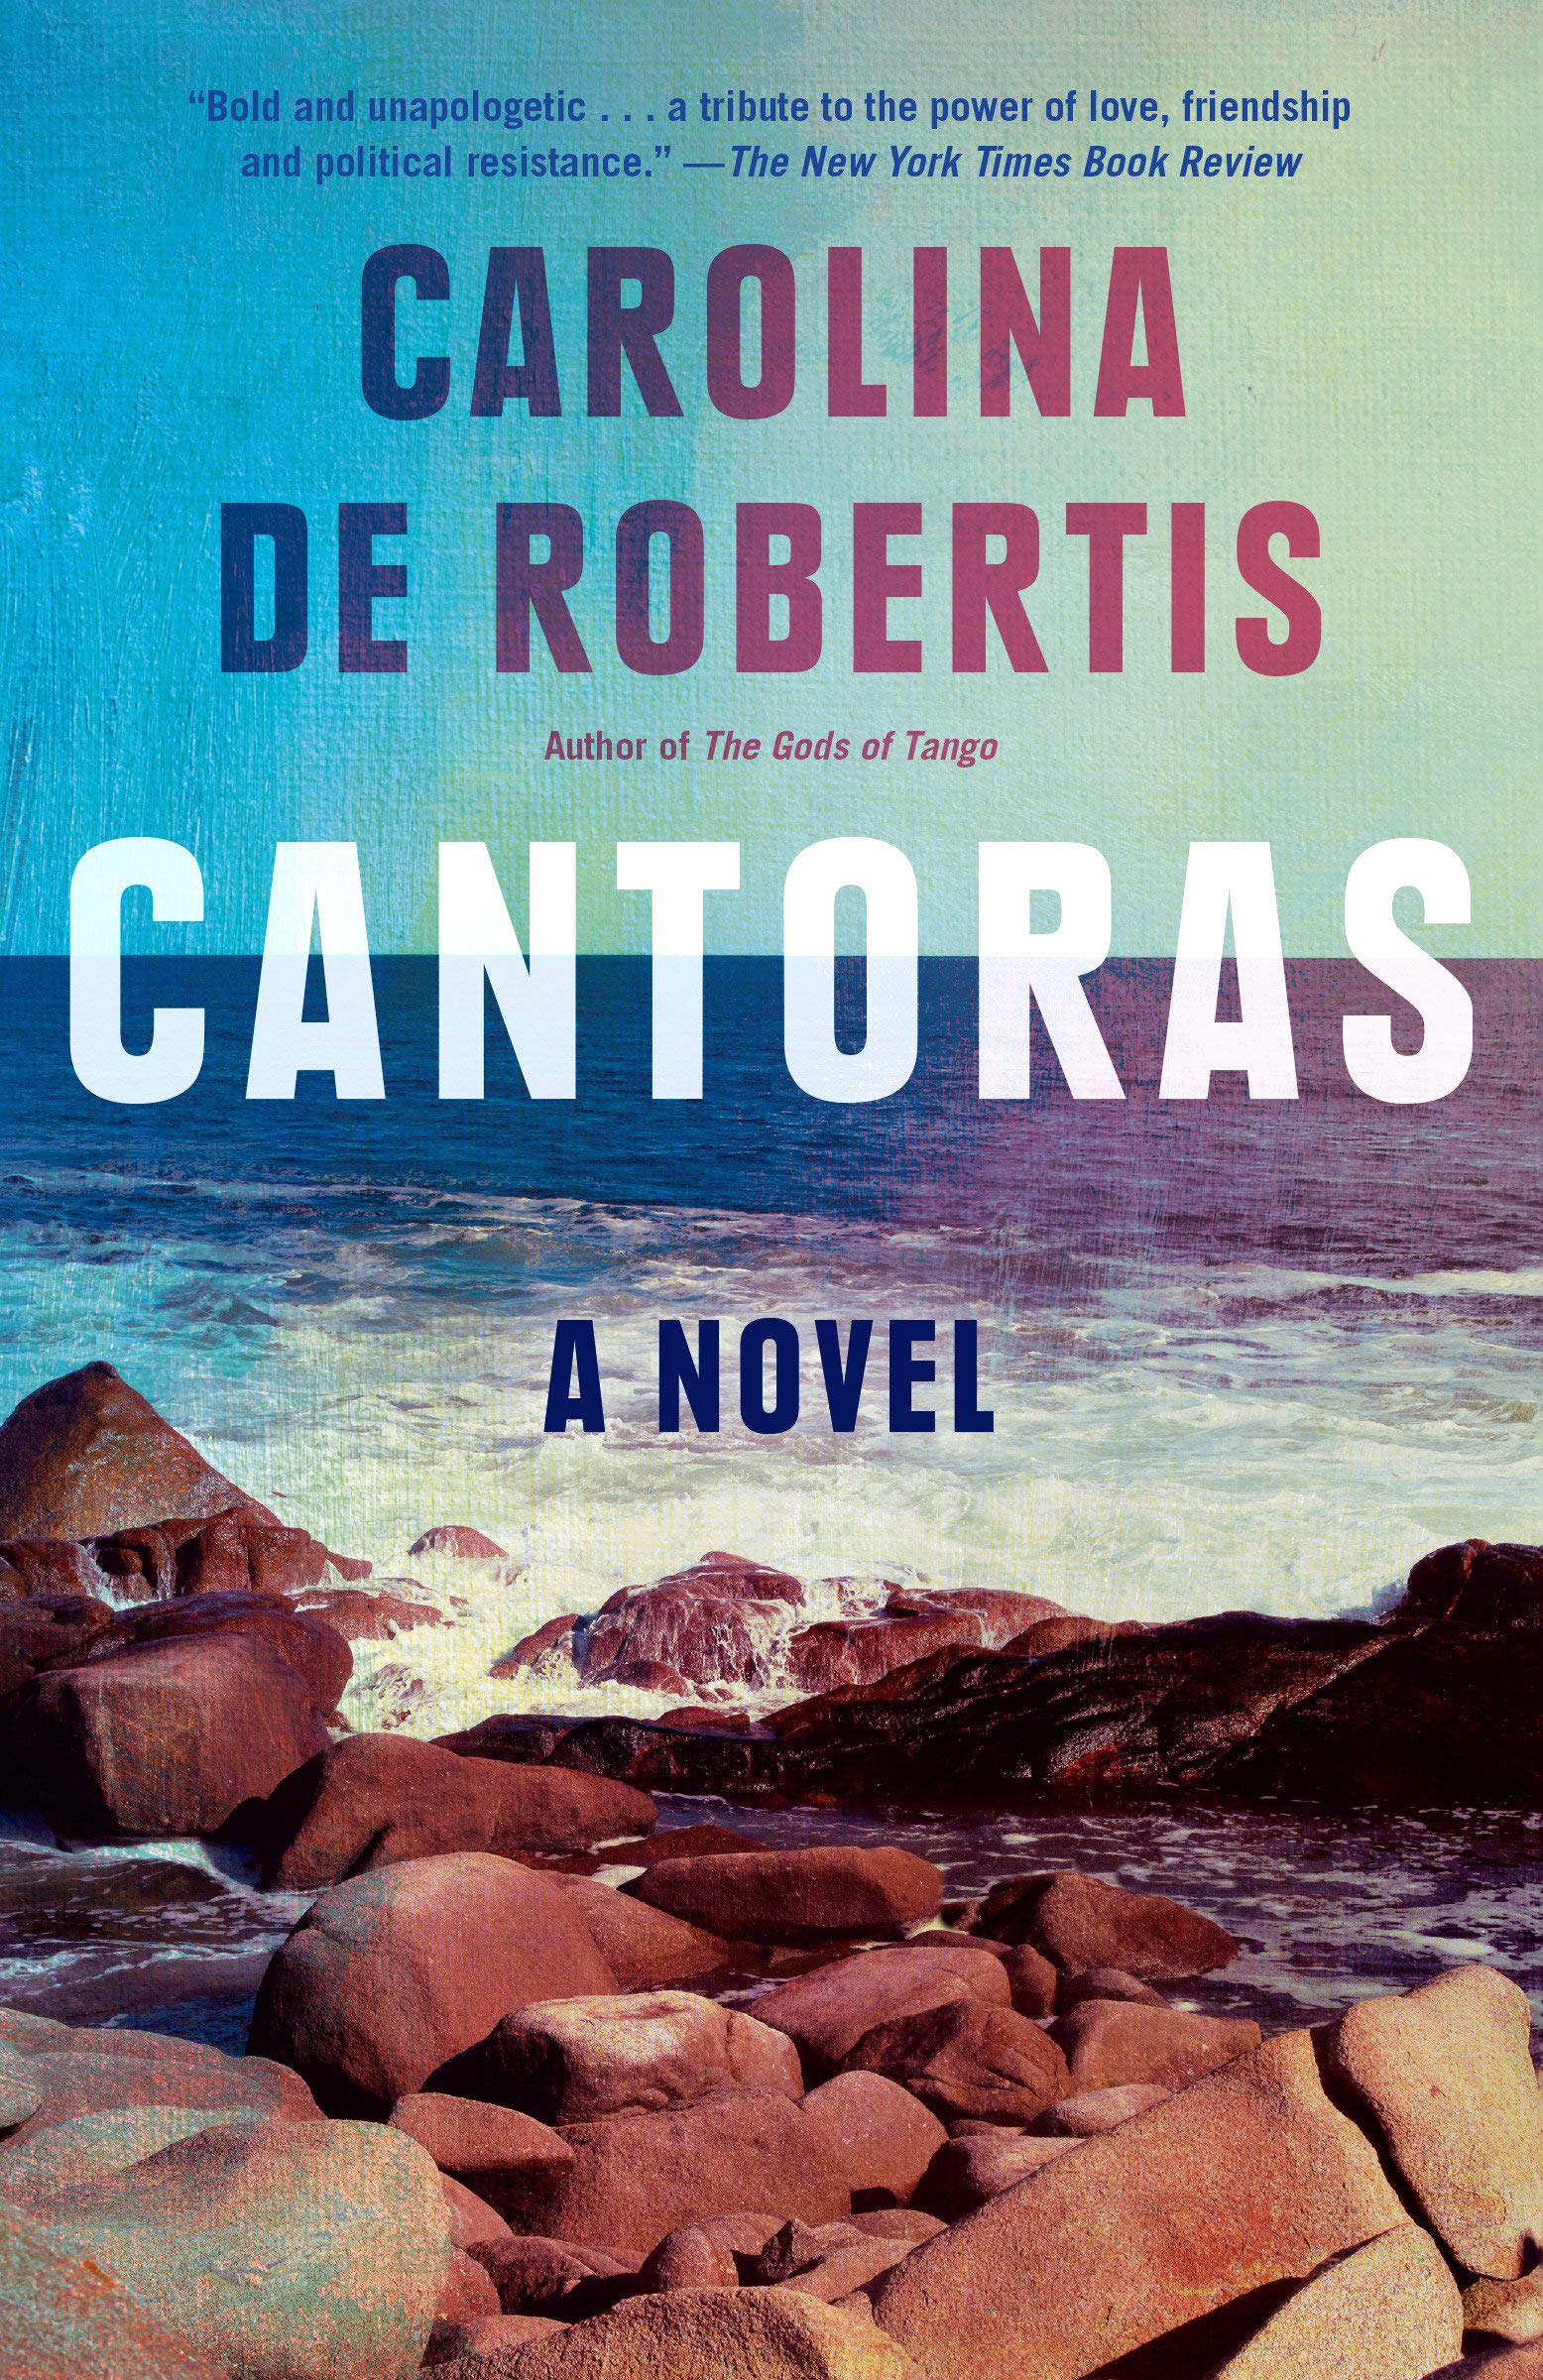 Cover of "Cantoras" by Carolina De Robertis